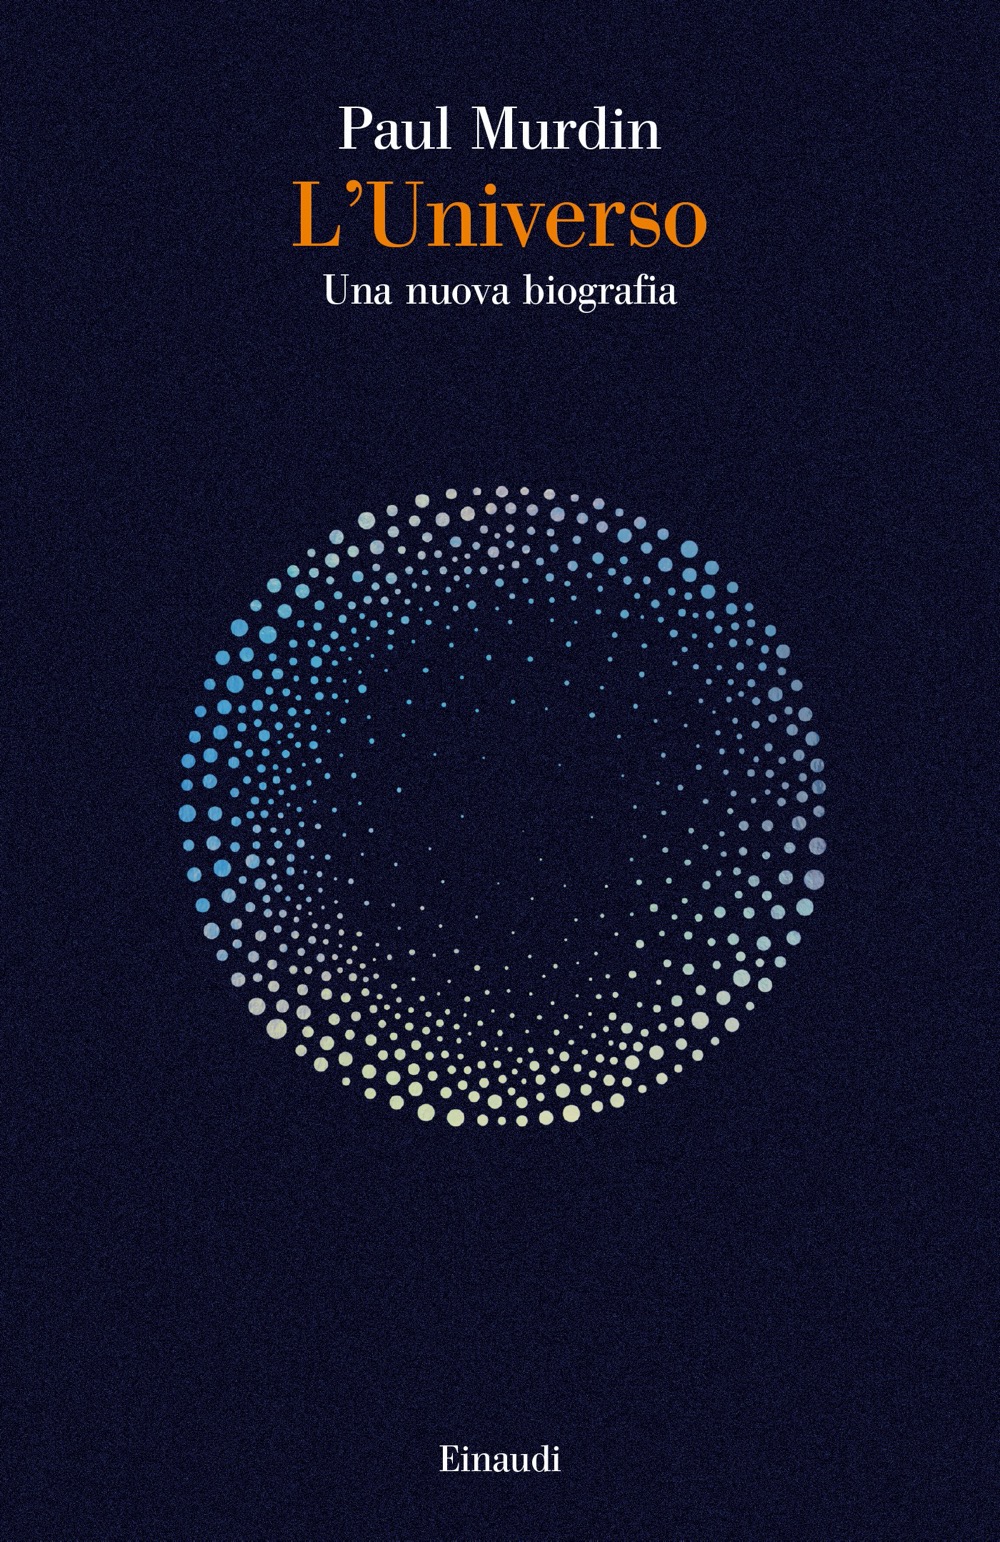 L'universo, Paul Murdin. Giulio Einaudi editore - Saggi